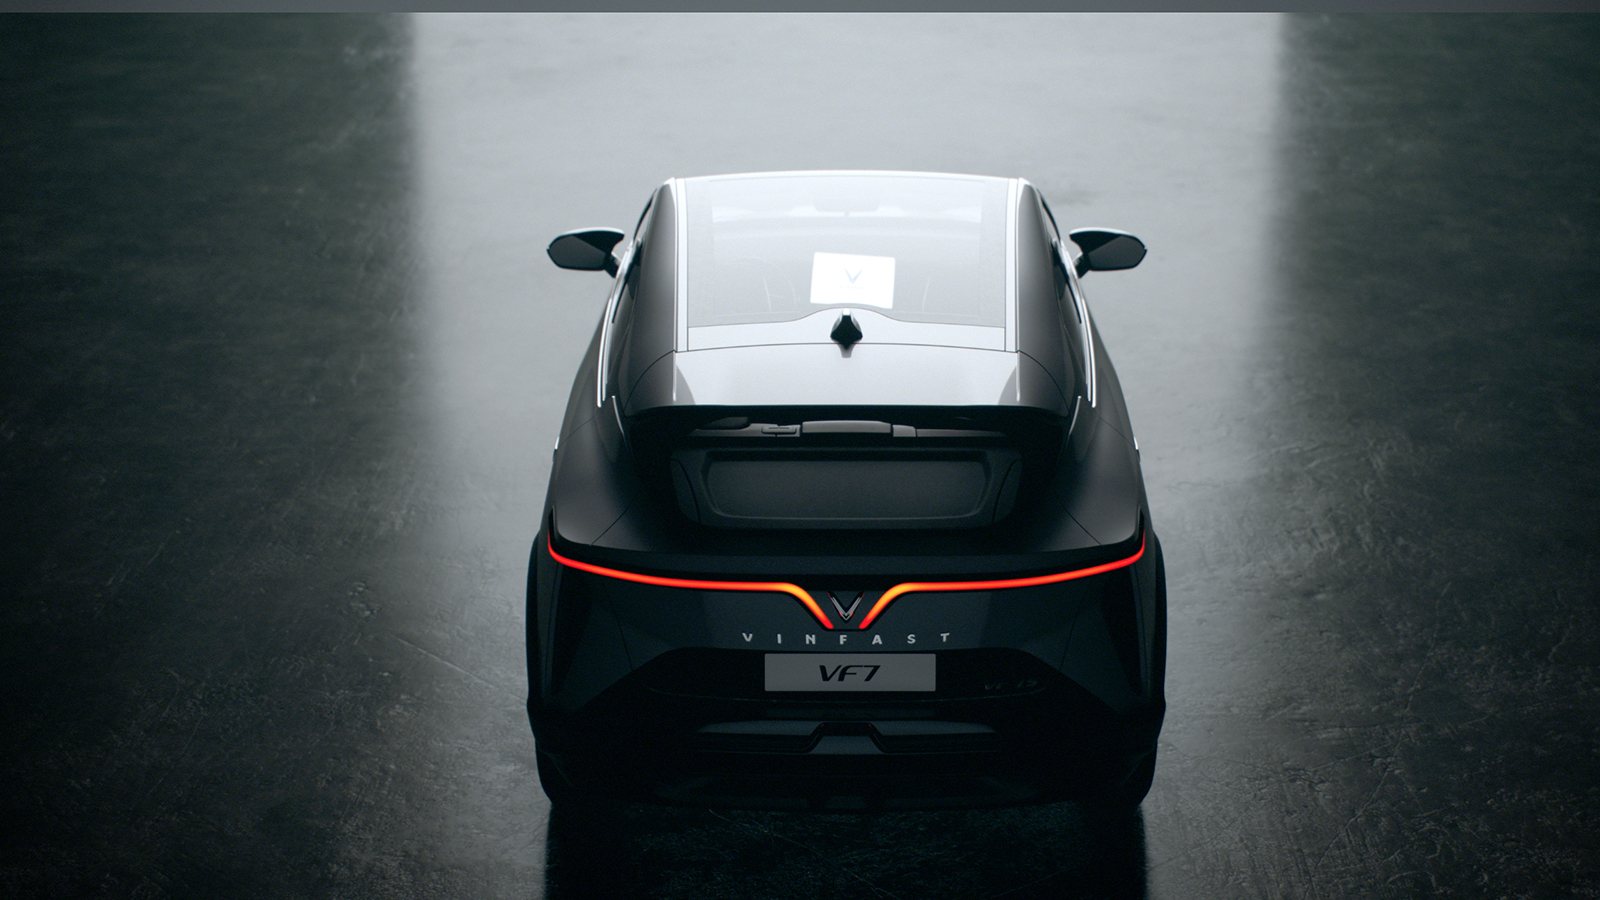 Cận cảnh hình ảnh VF 7 - mẫu ô tô điện của tương lai - Dailyxehoi ...